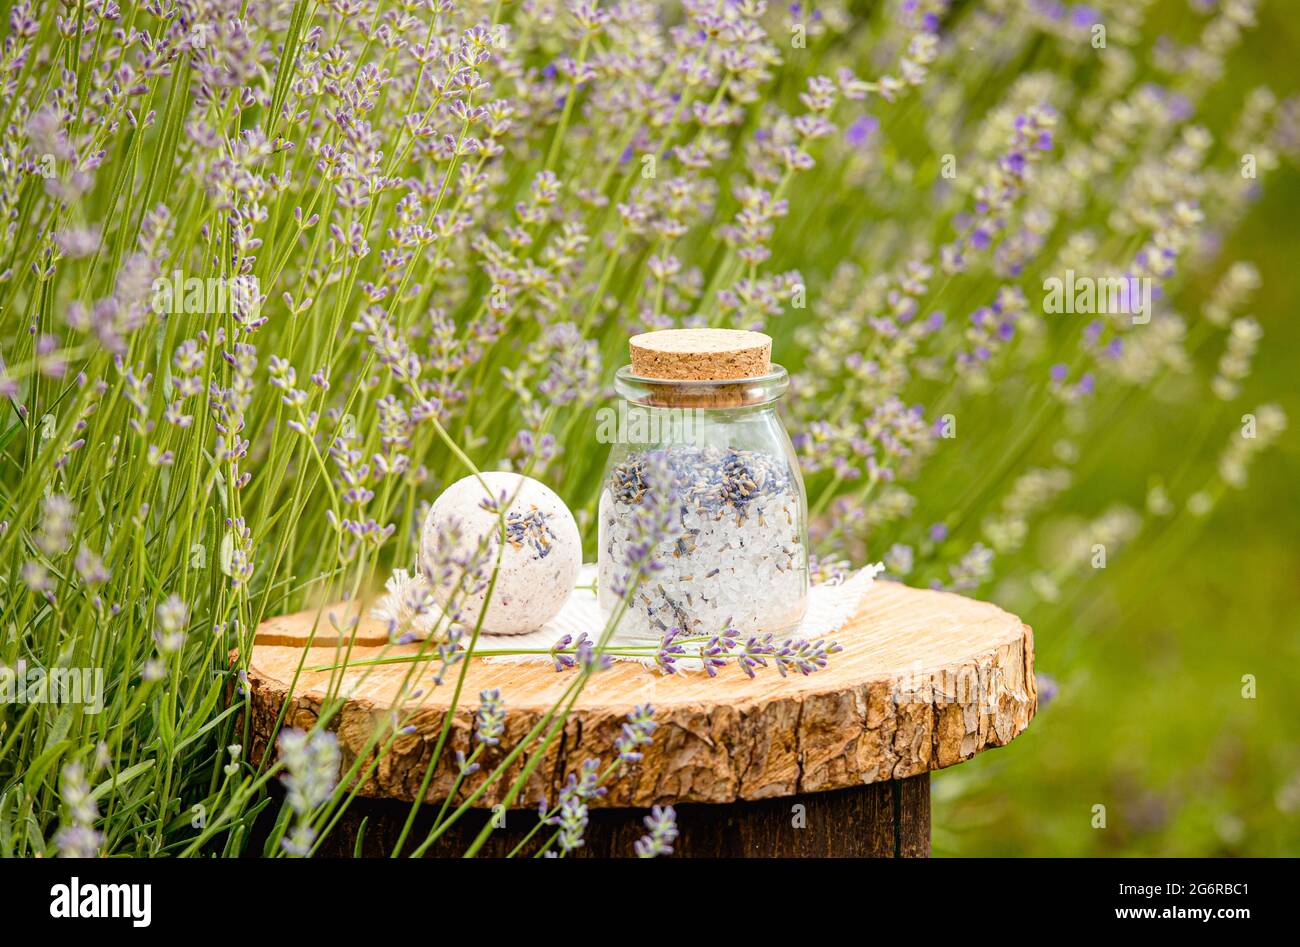 Verschiedene hausgemachte Lavendelblüten Produkte Badbombe und Badesalz auf natürlichem Kiefernholz Scheibenablage im Lavendelfeld im Sommer im Freien. Stockfoto